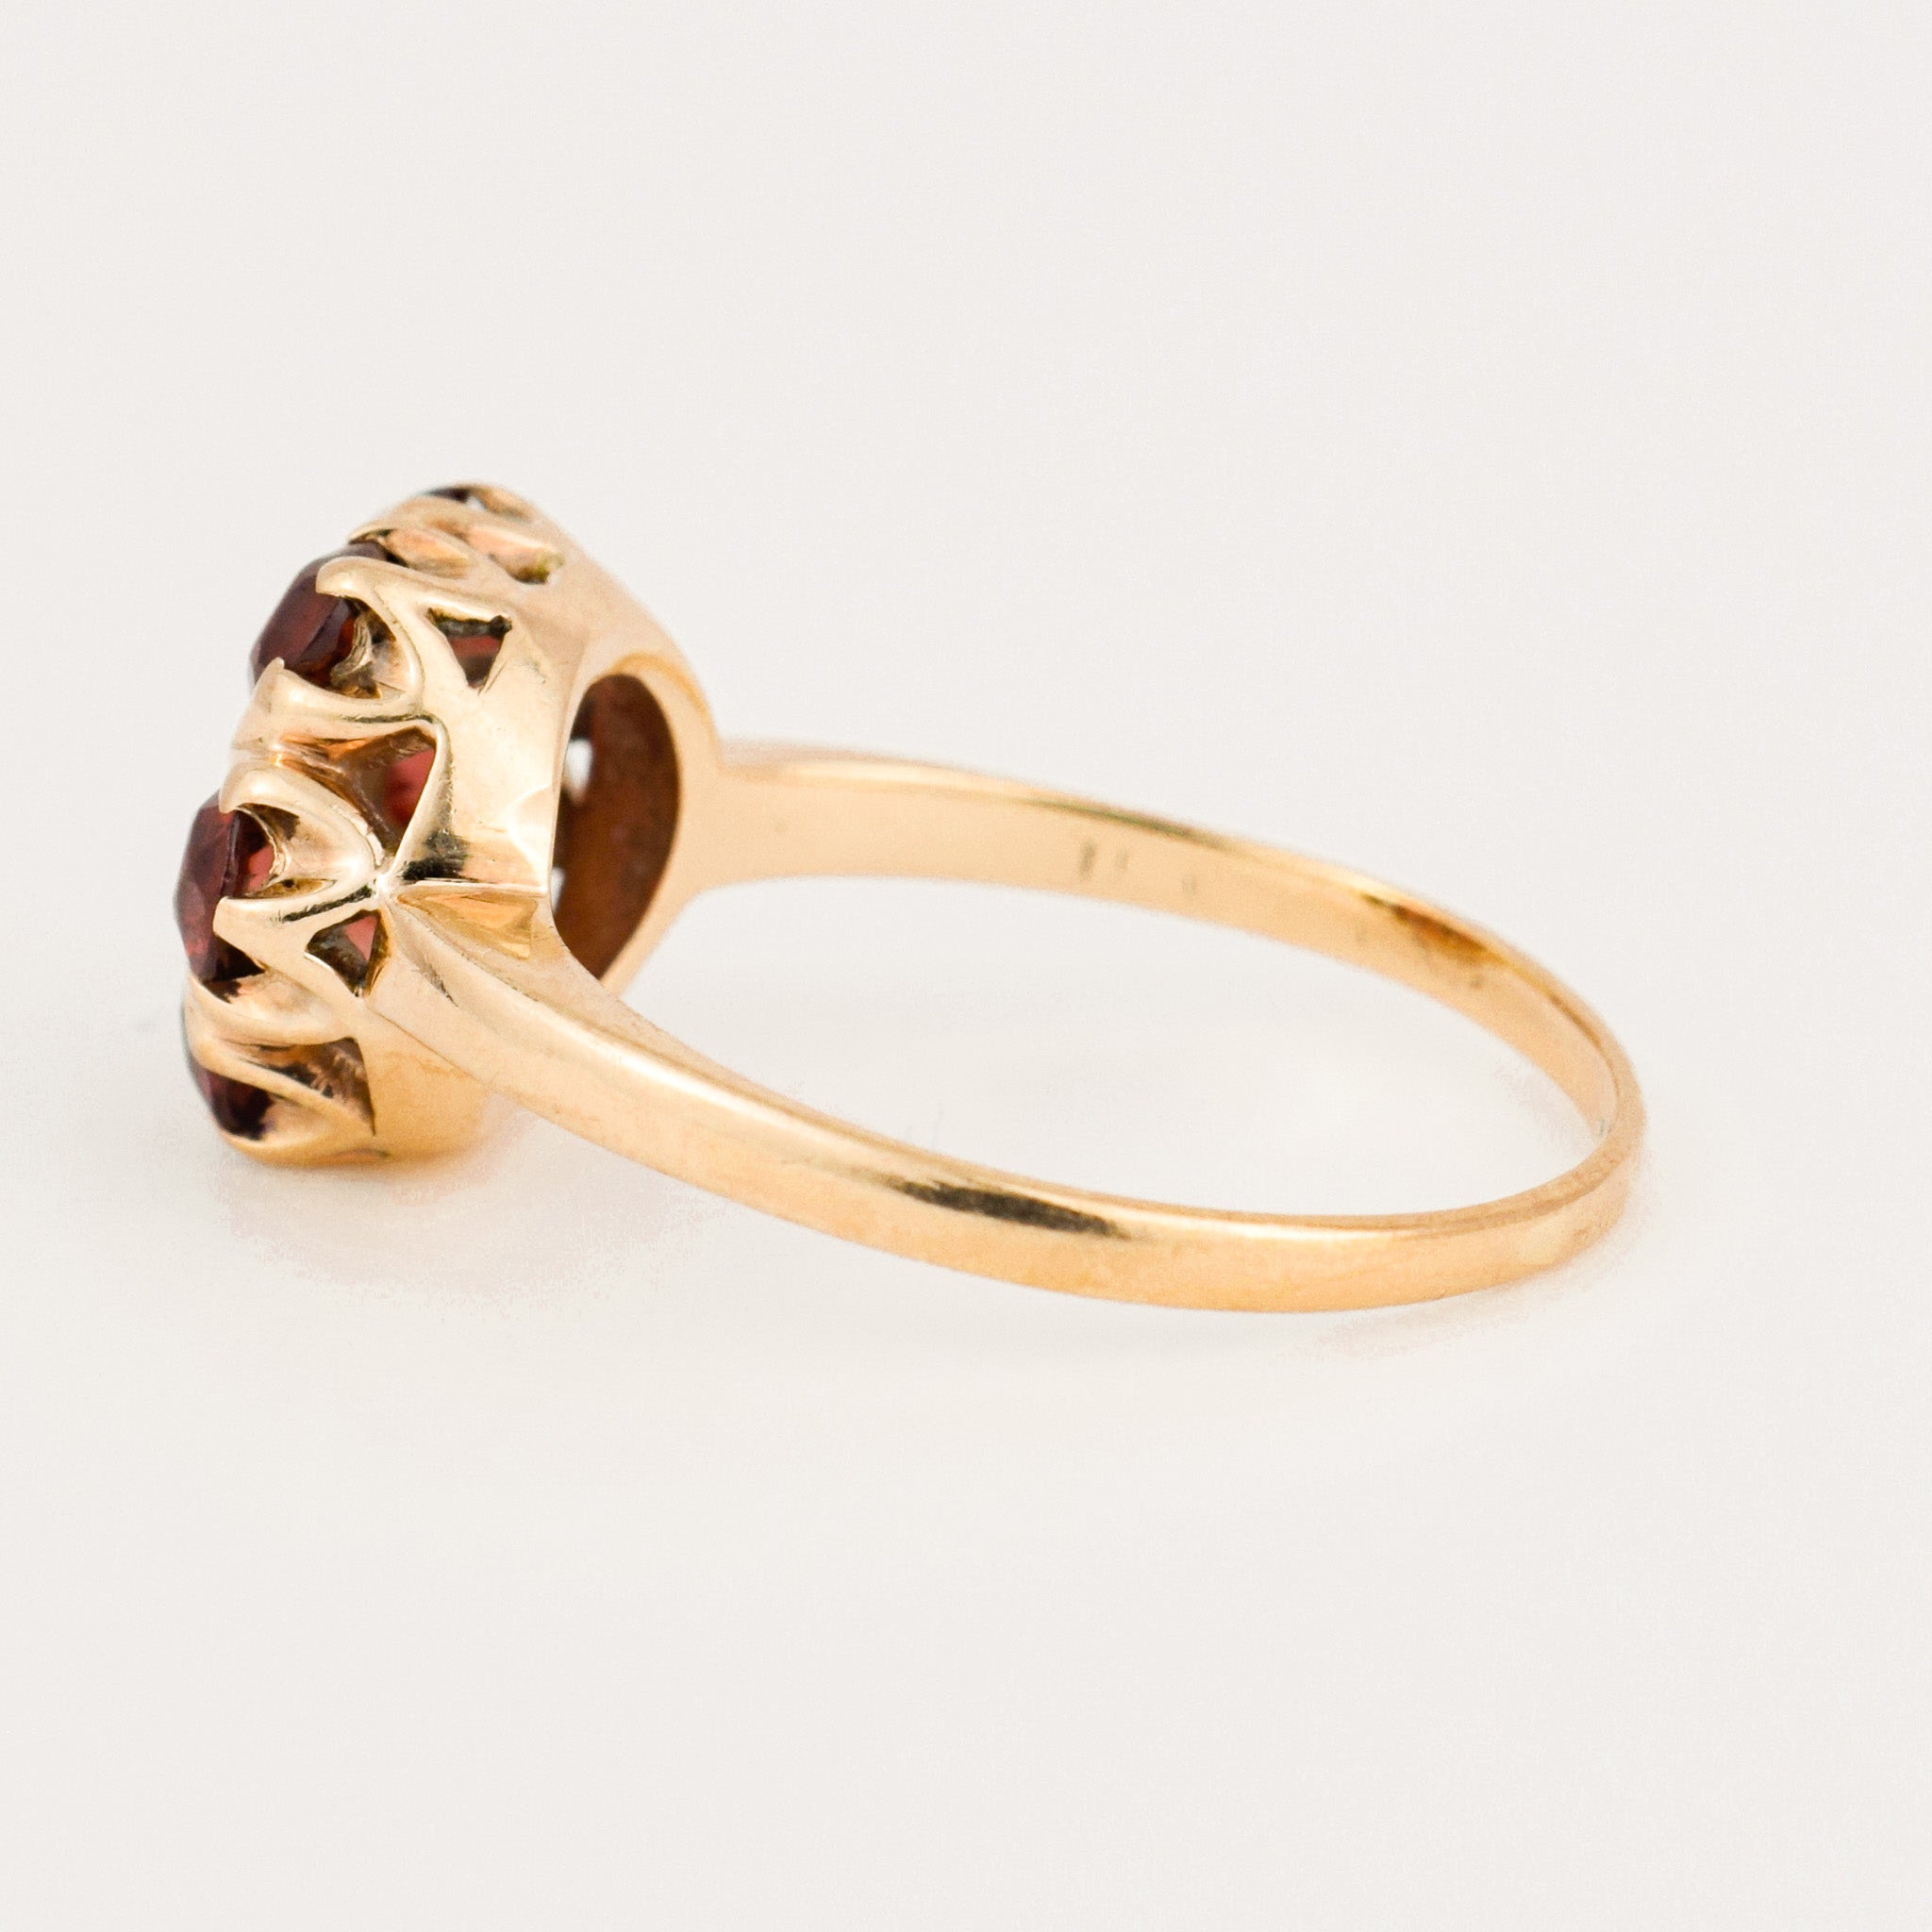 vintage gold Topaz Floral Cluster Ring